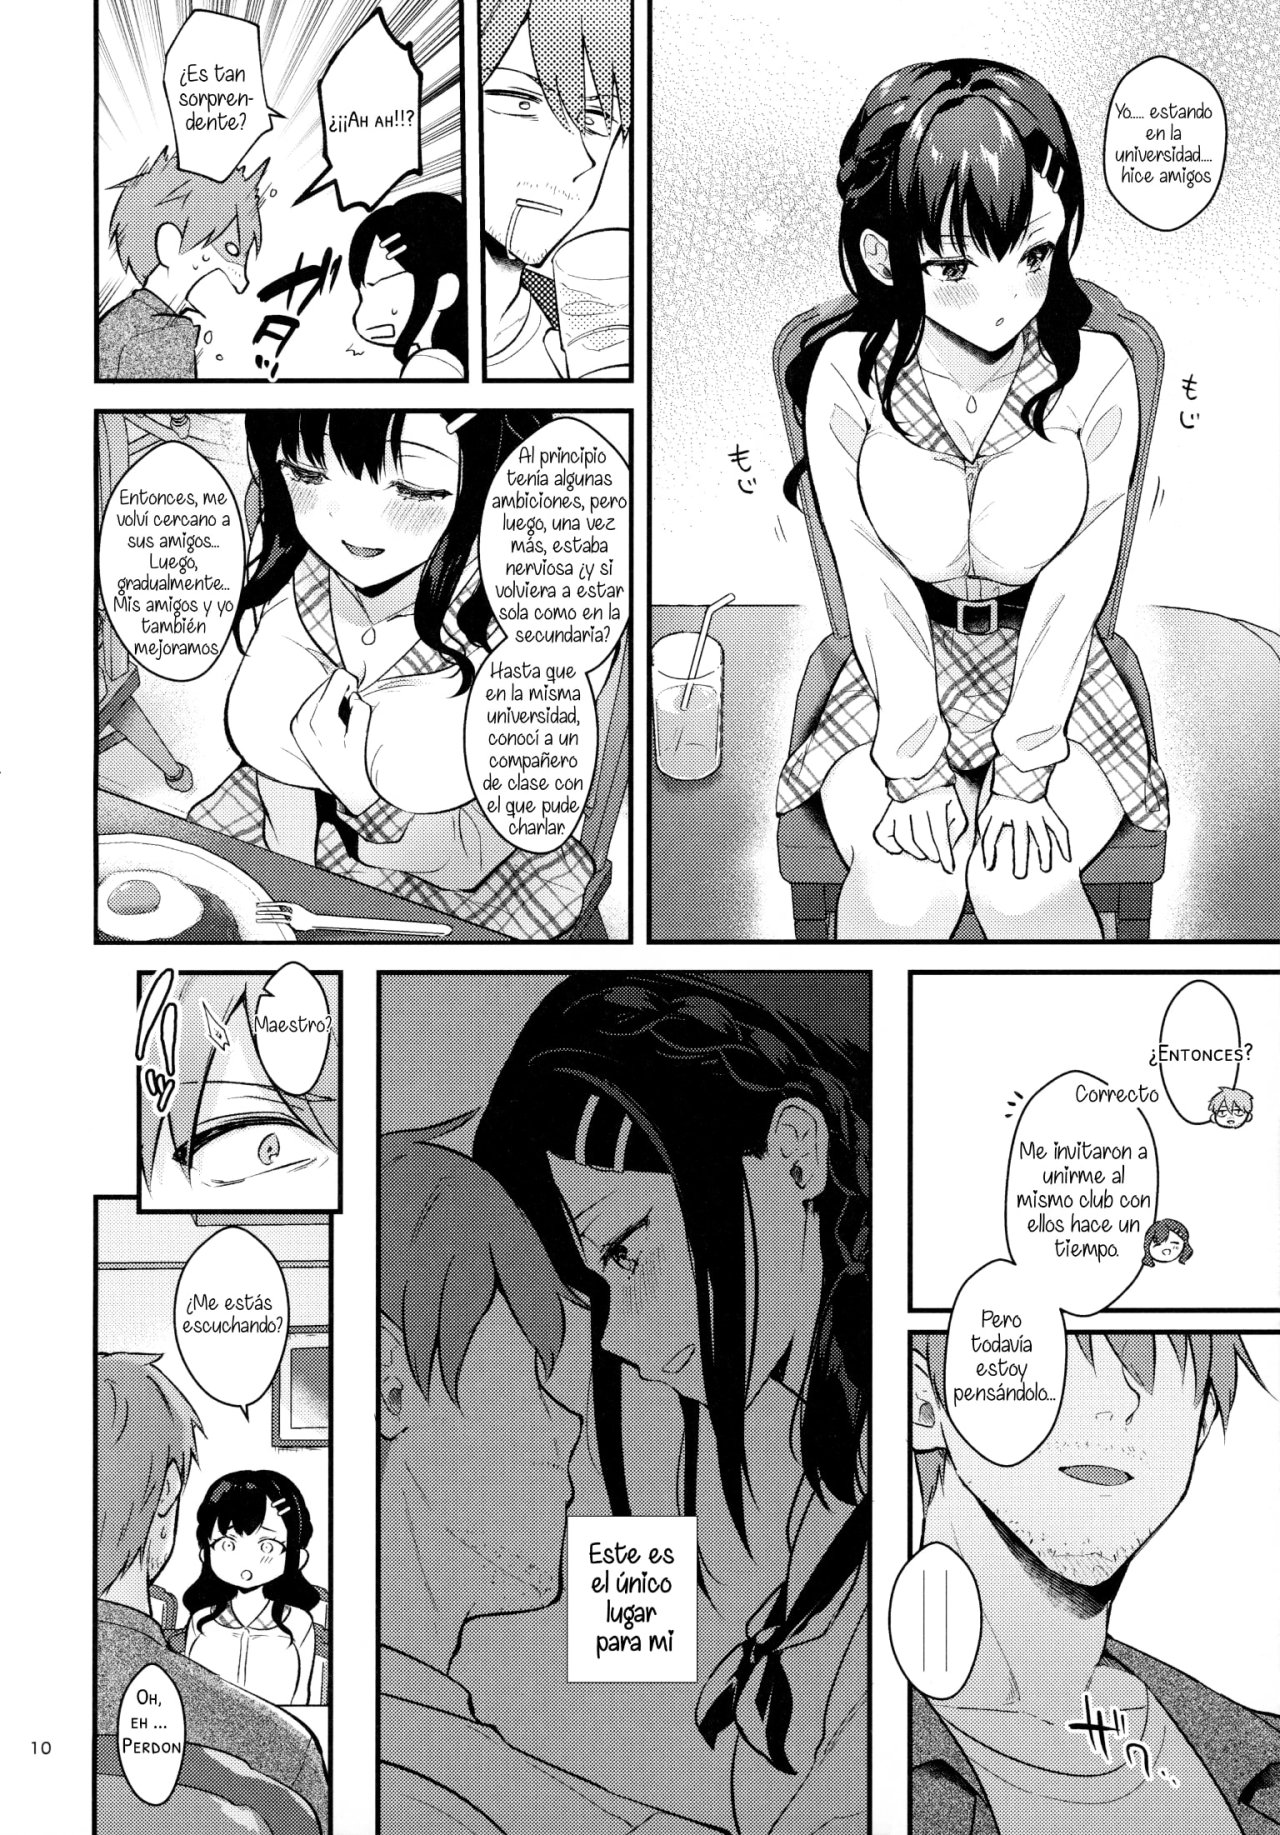 Sunshower-JK Miyako no Valentine Manga 3 - 8